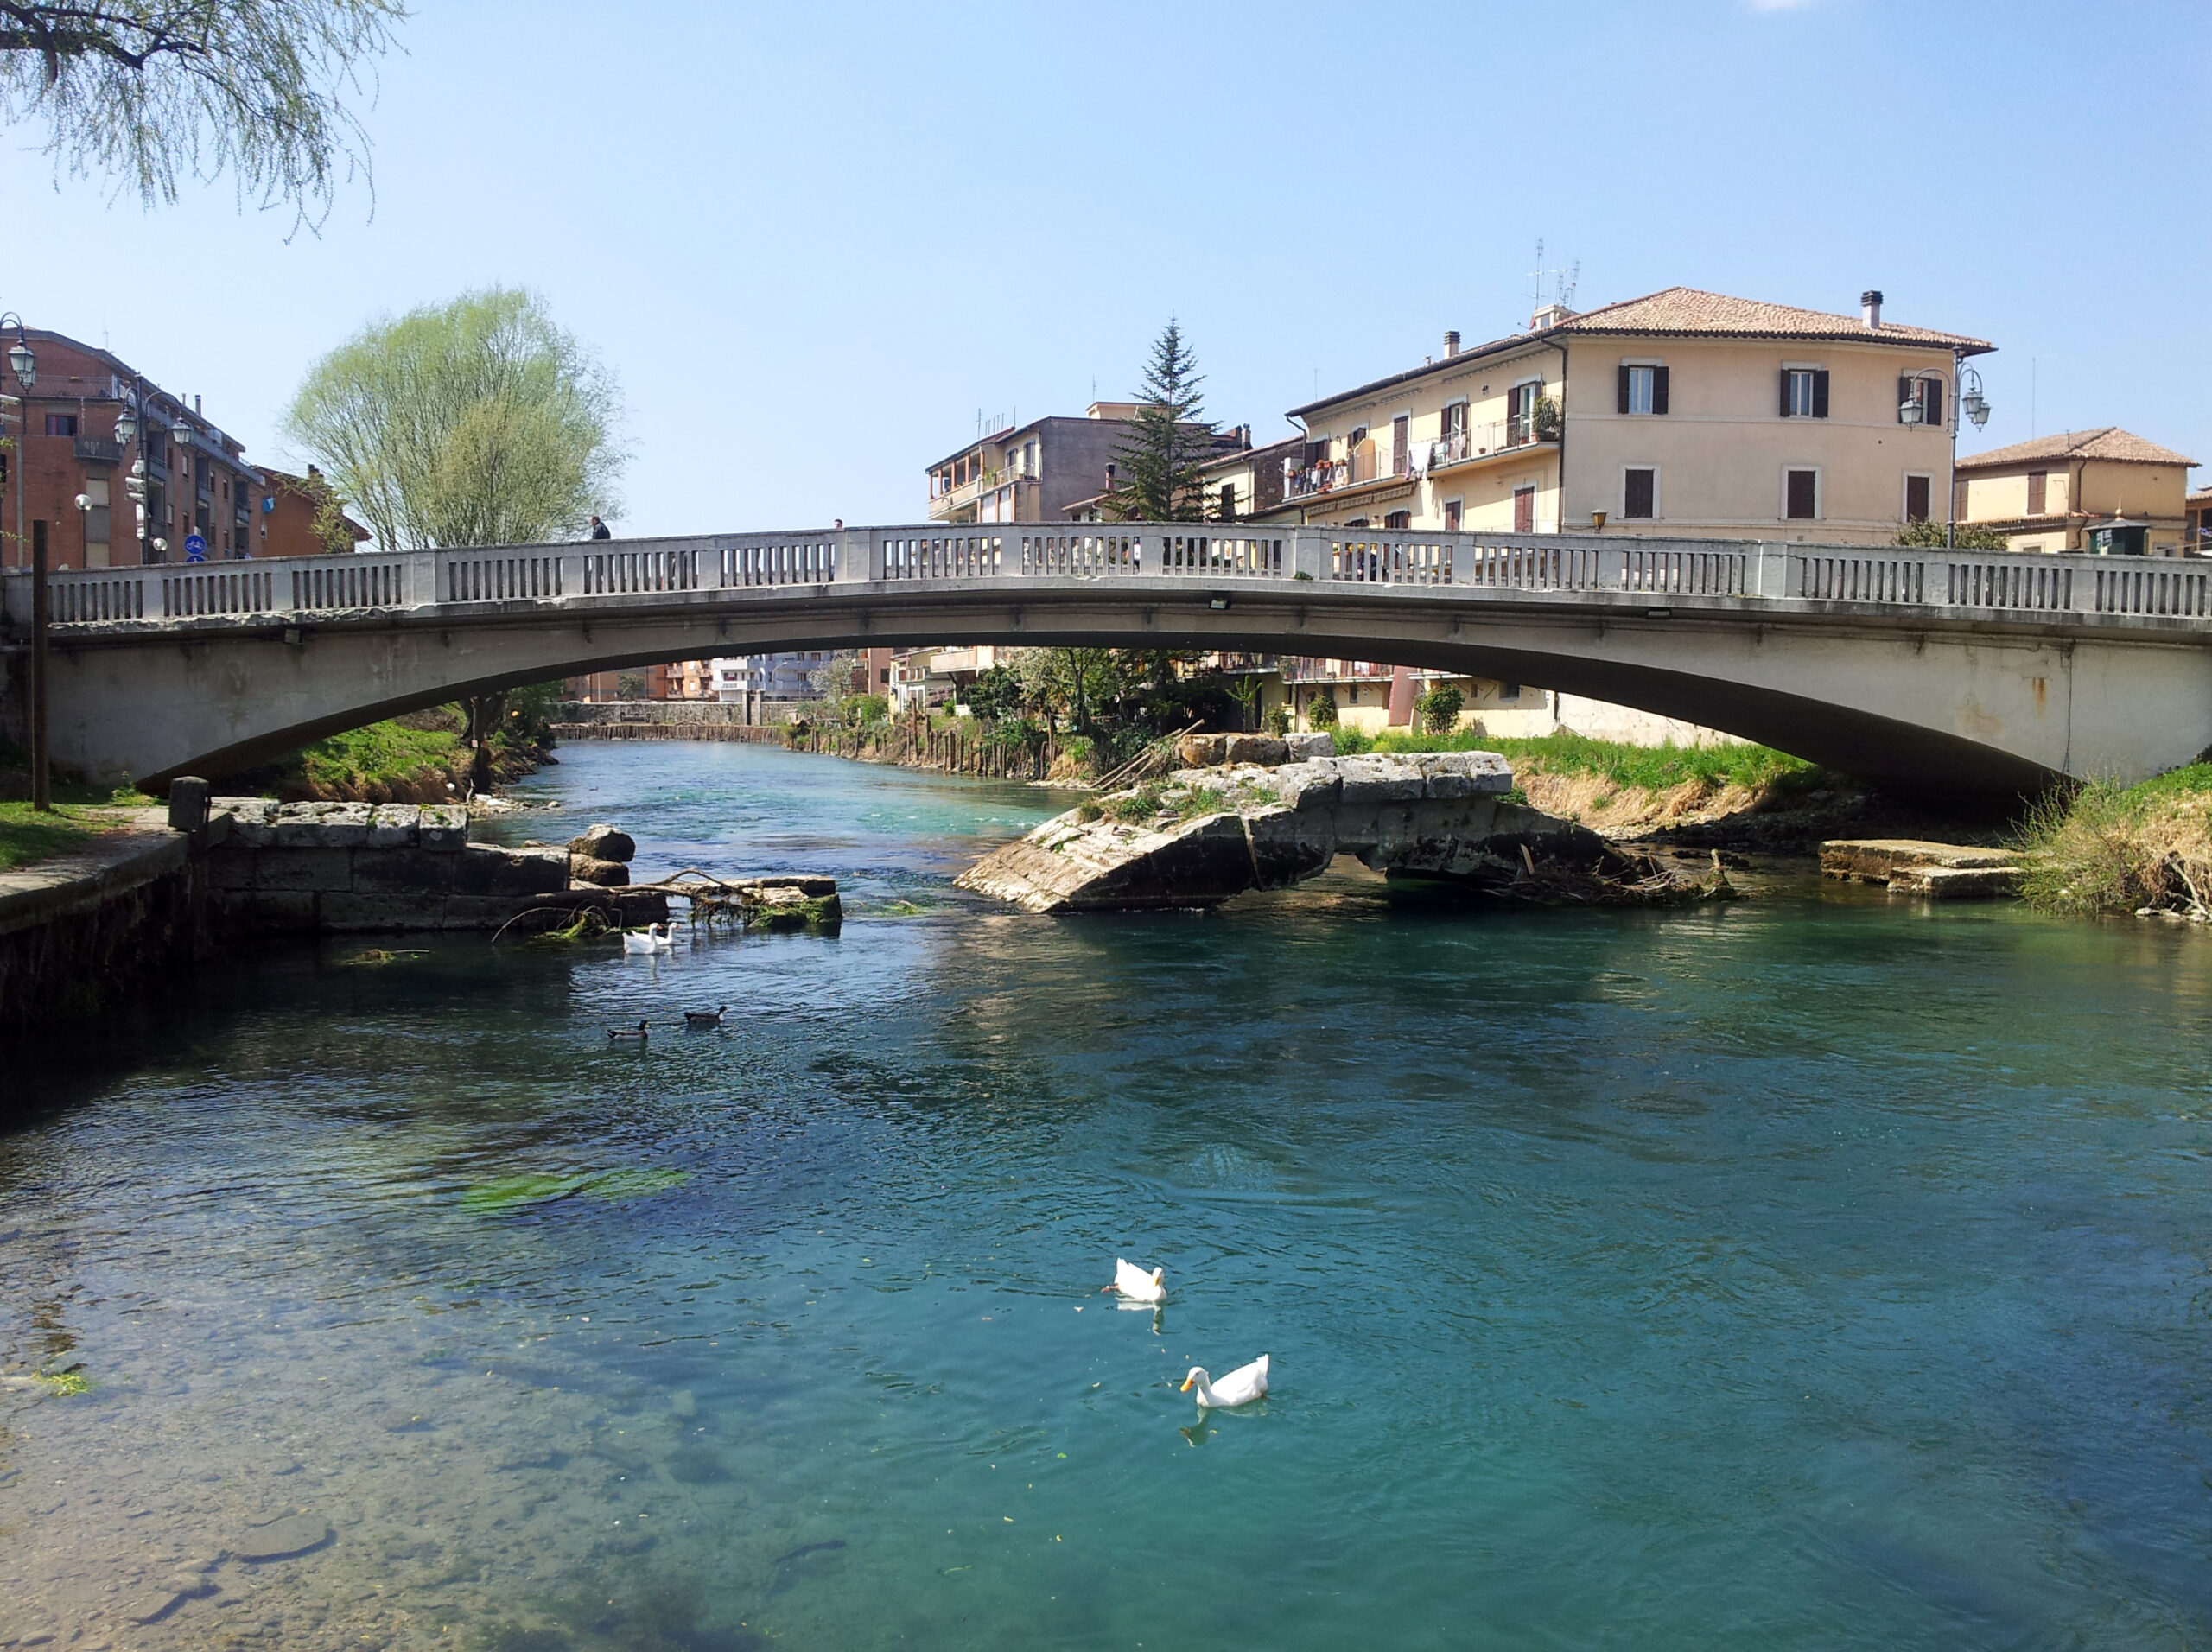 Ponte_Romano_di_Rieti_-_dalla_riva,_2 - Wikimedia Commons